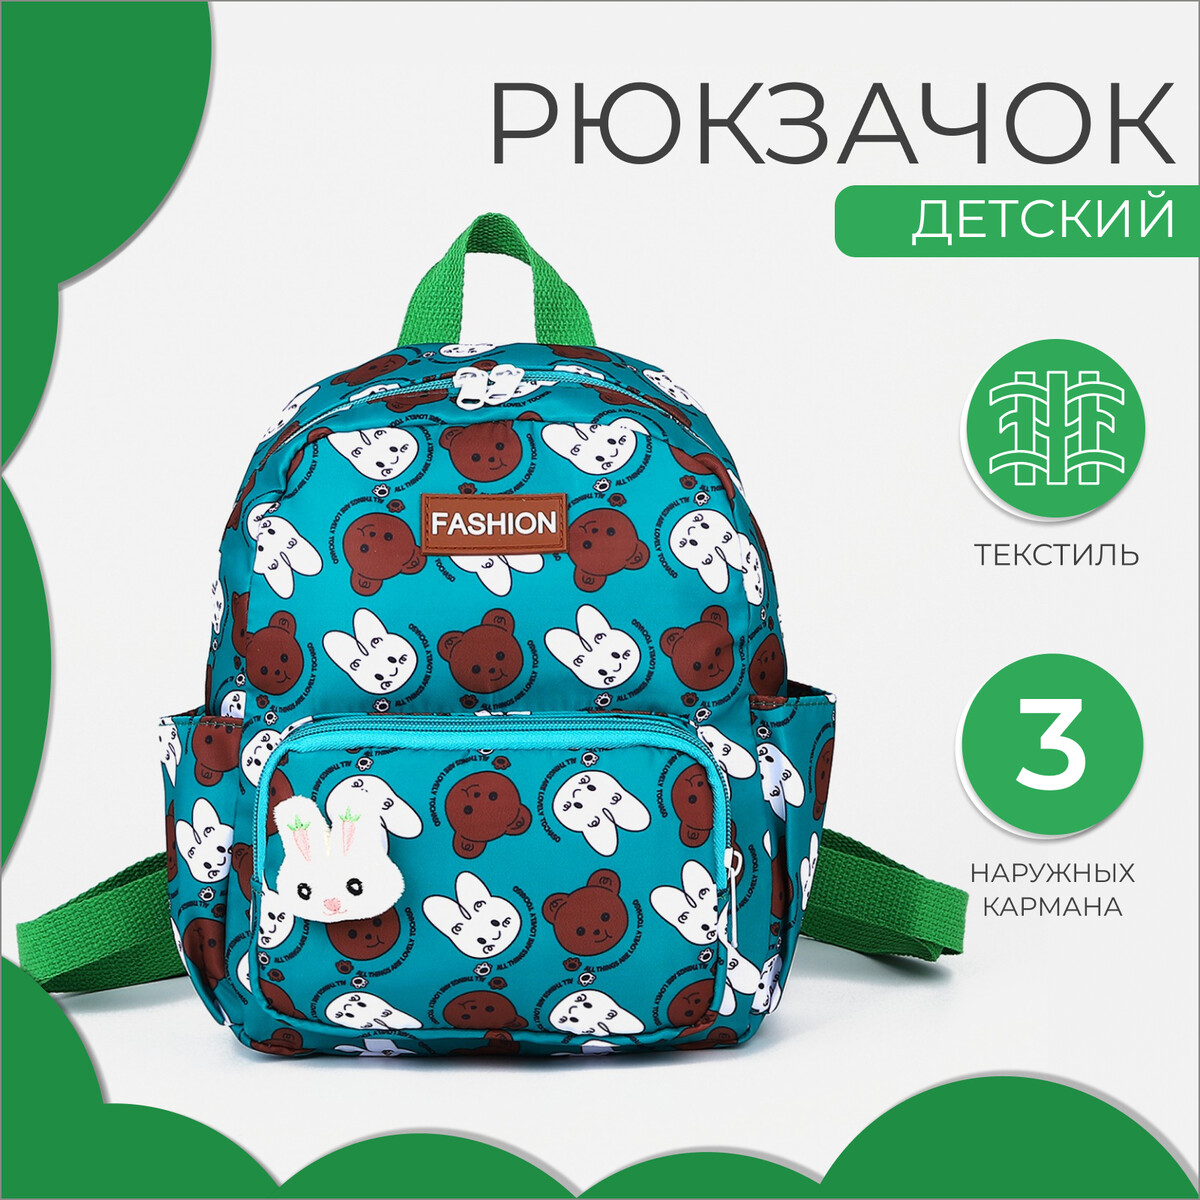 Рюкзак детский на молнии, 3 наружных кармана, цвет зеленый рюкзак сумка на молнии 4 наружных кармана отделение для обуви зеленый